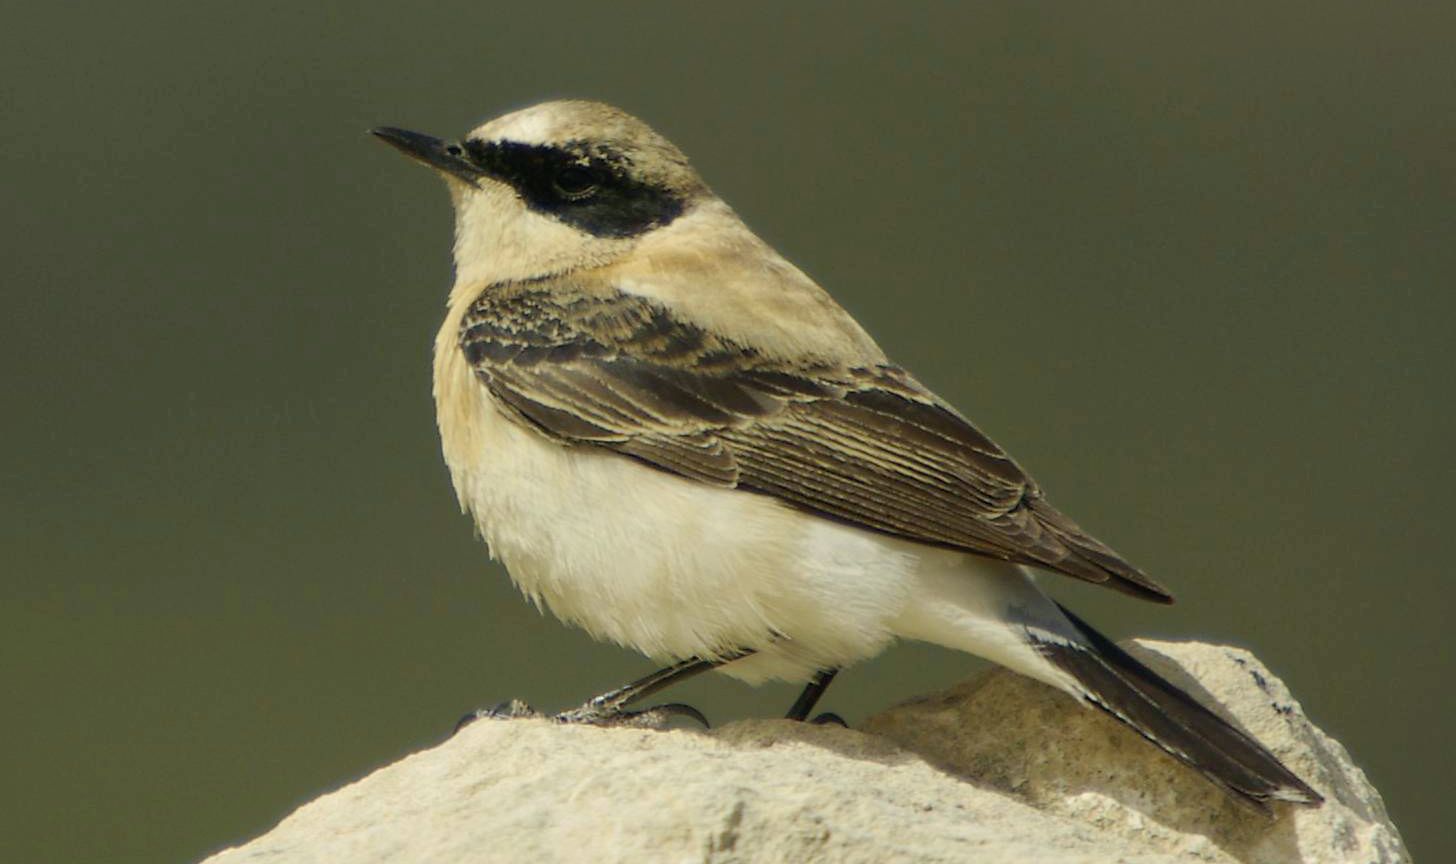 Τα πουλιά της Ελλάδας: Αρσενική Ασπροκωλίνα (Oenanthe melanoleuca)